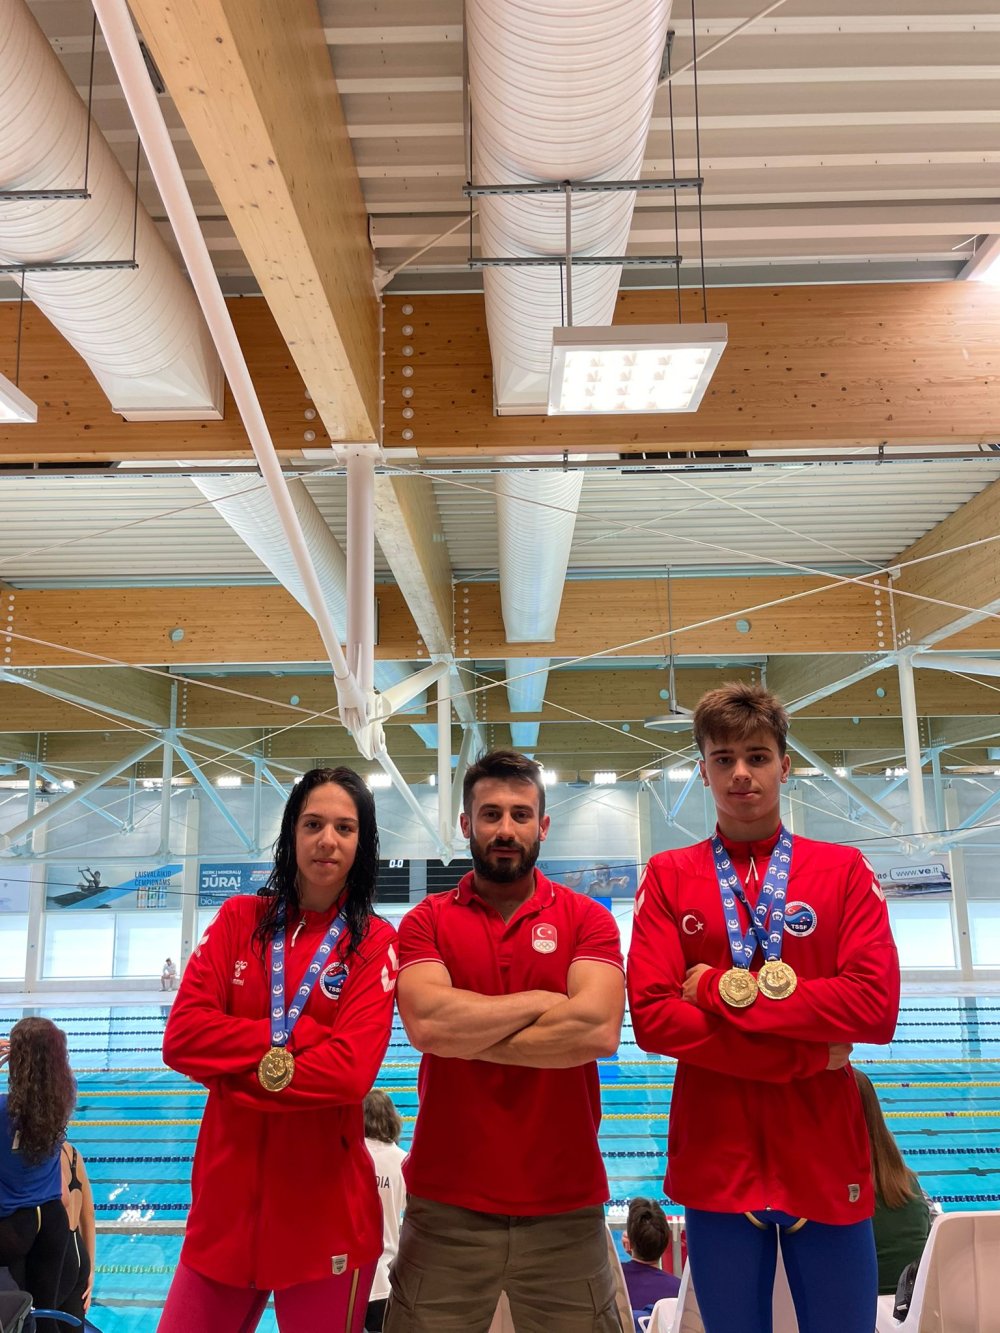 Paletli Yüzme Avrupa Gençler Şampiyonası'nda Bakırköy Ataspor’lu gençler altın madalyanın sahibi oldu